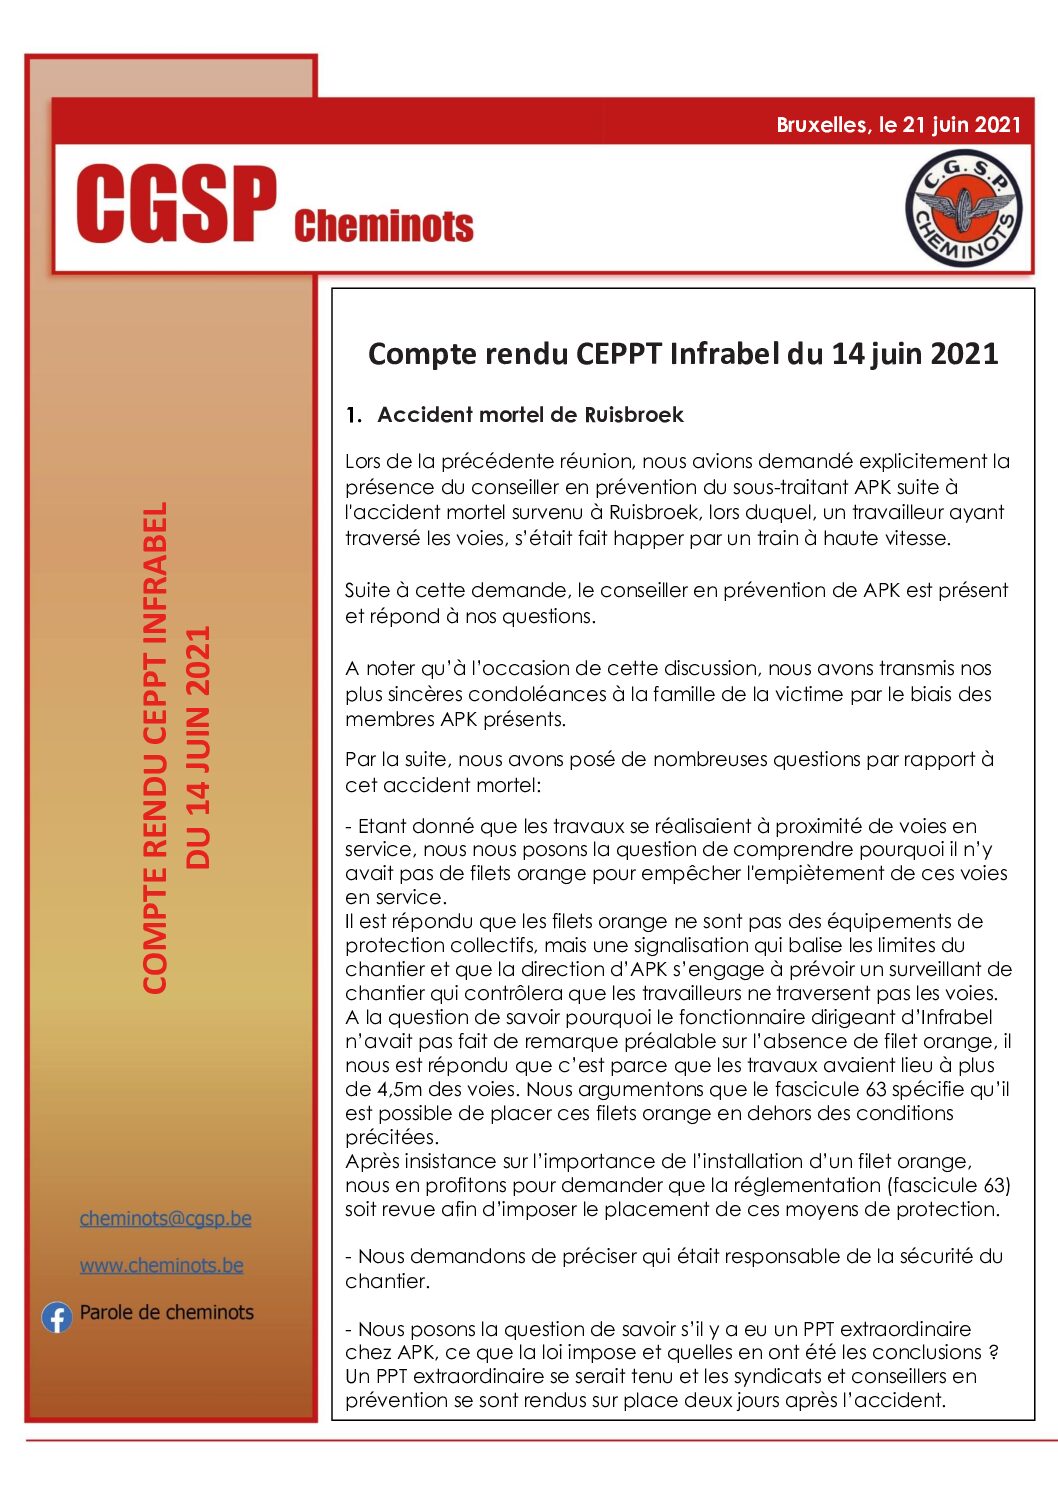 Compte rendu CEPPT Infrabel du 14 juin 2021